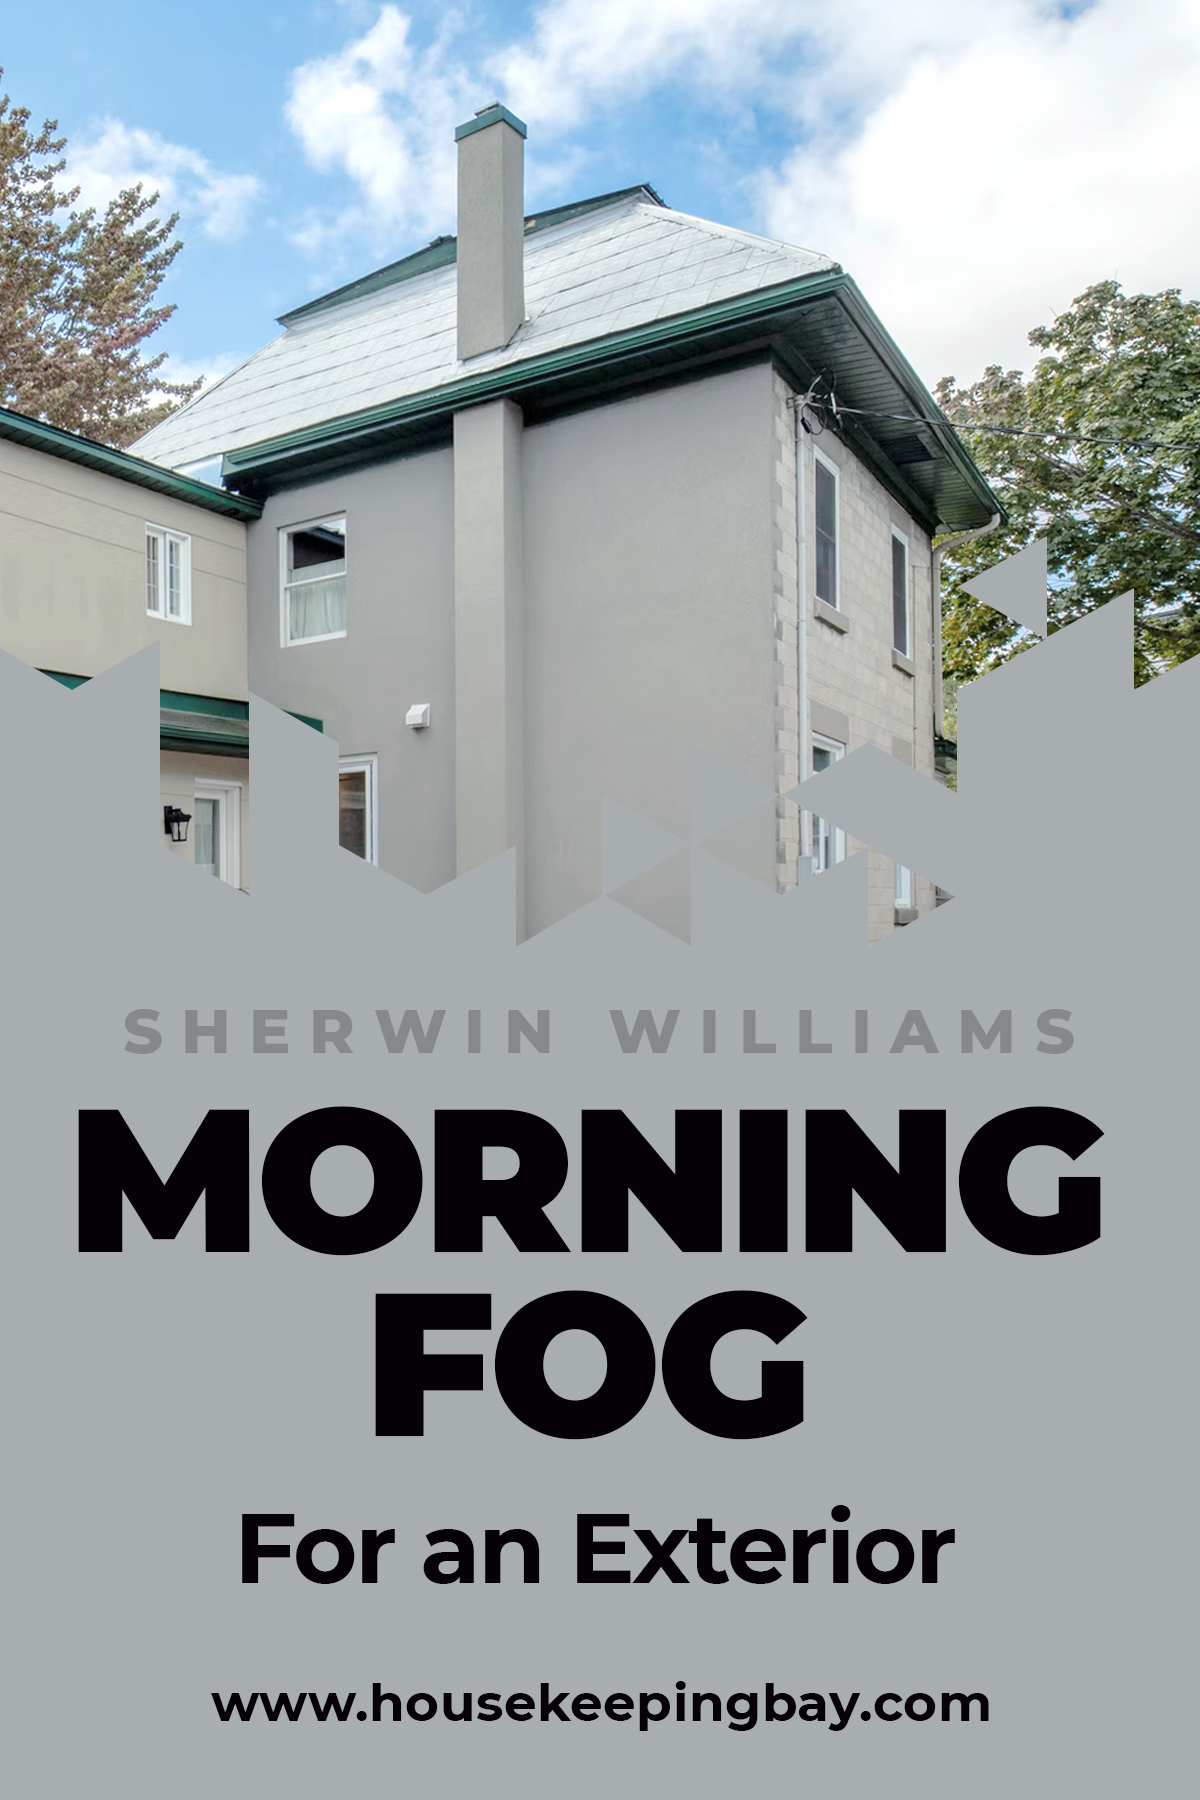 Morning fog for an Exterior